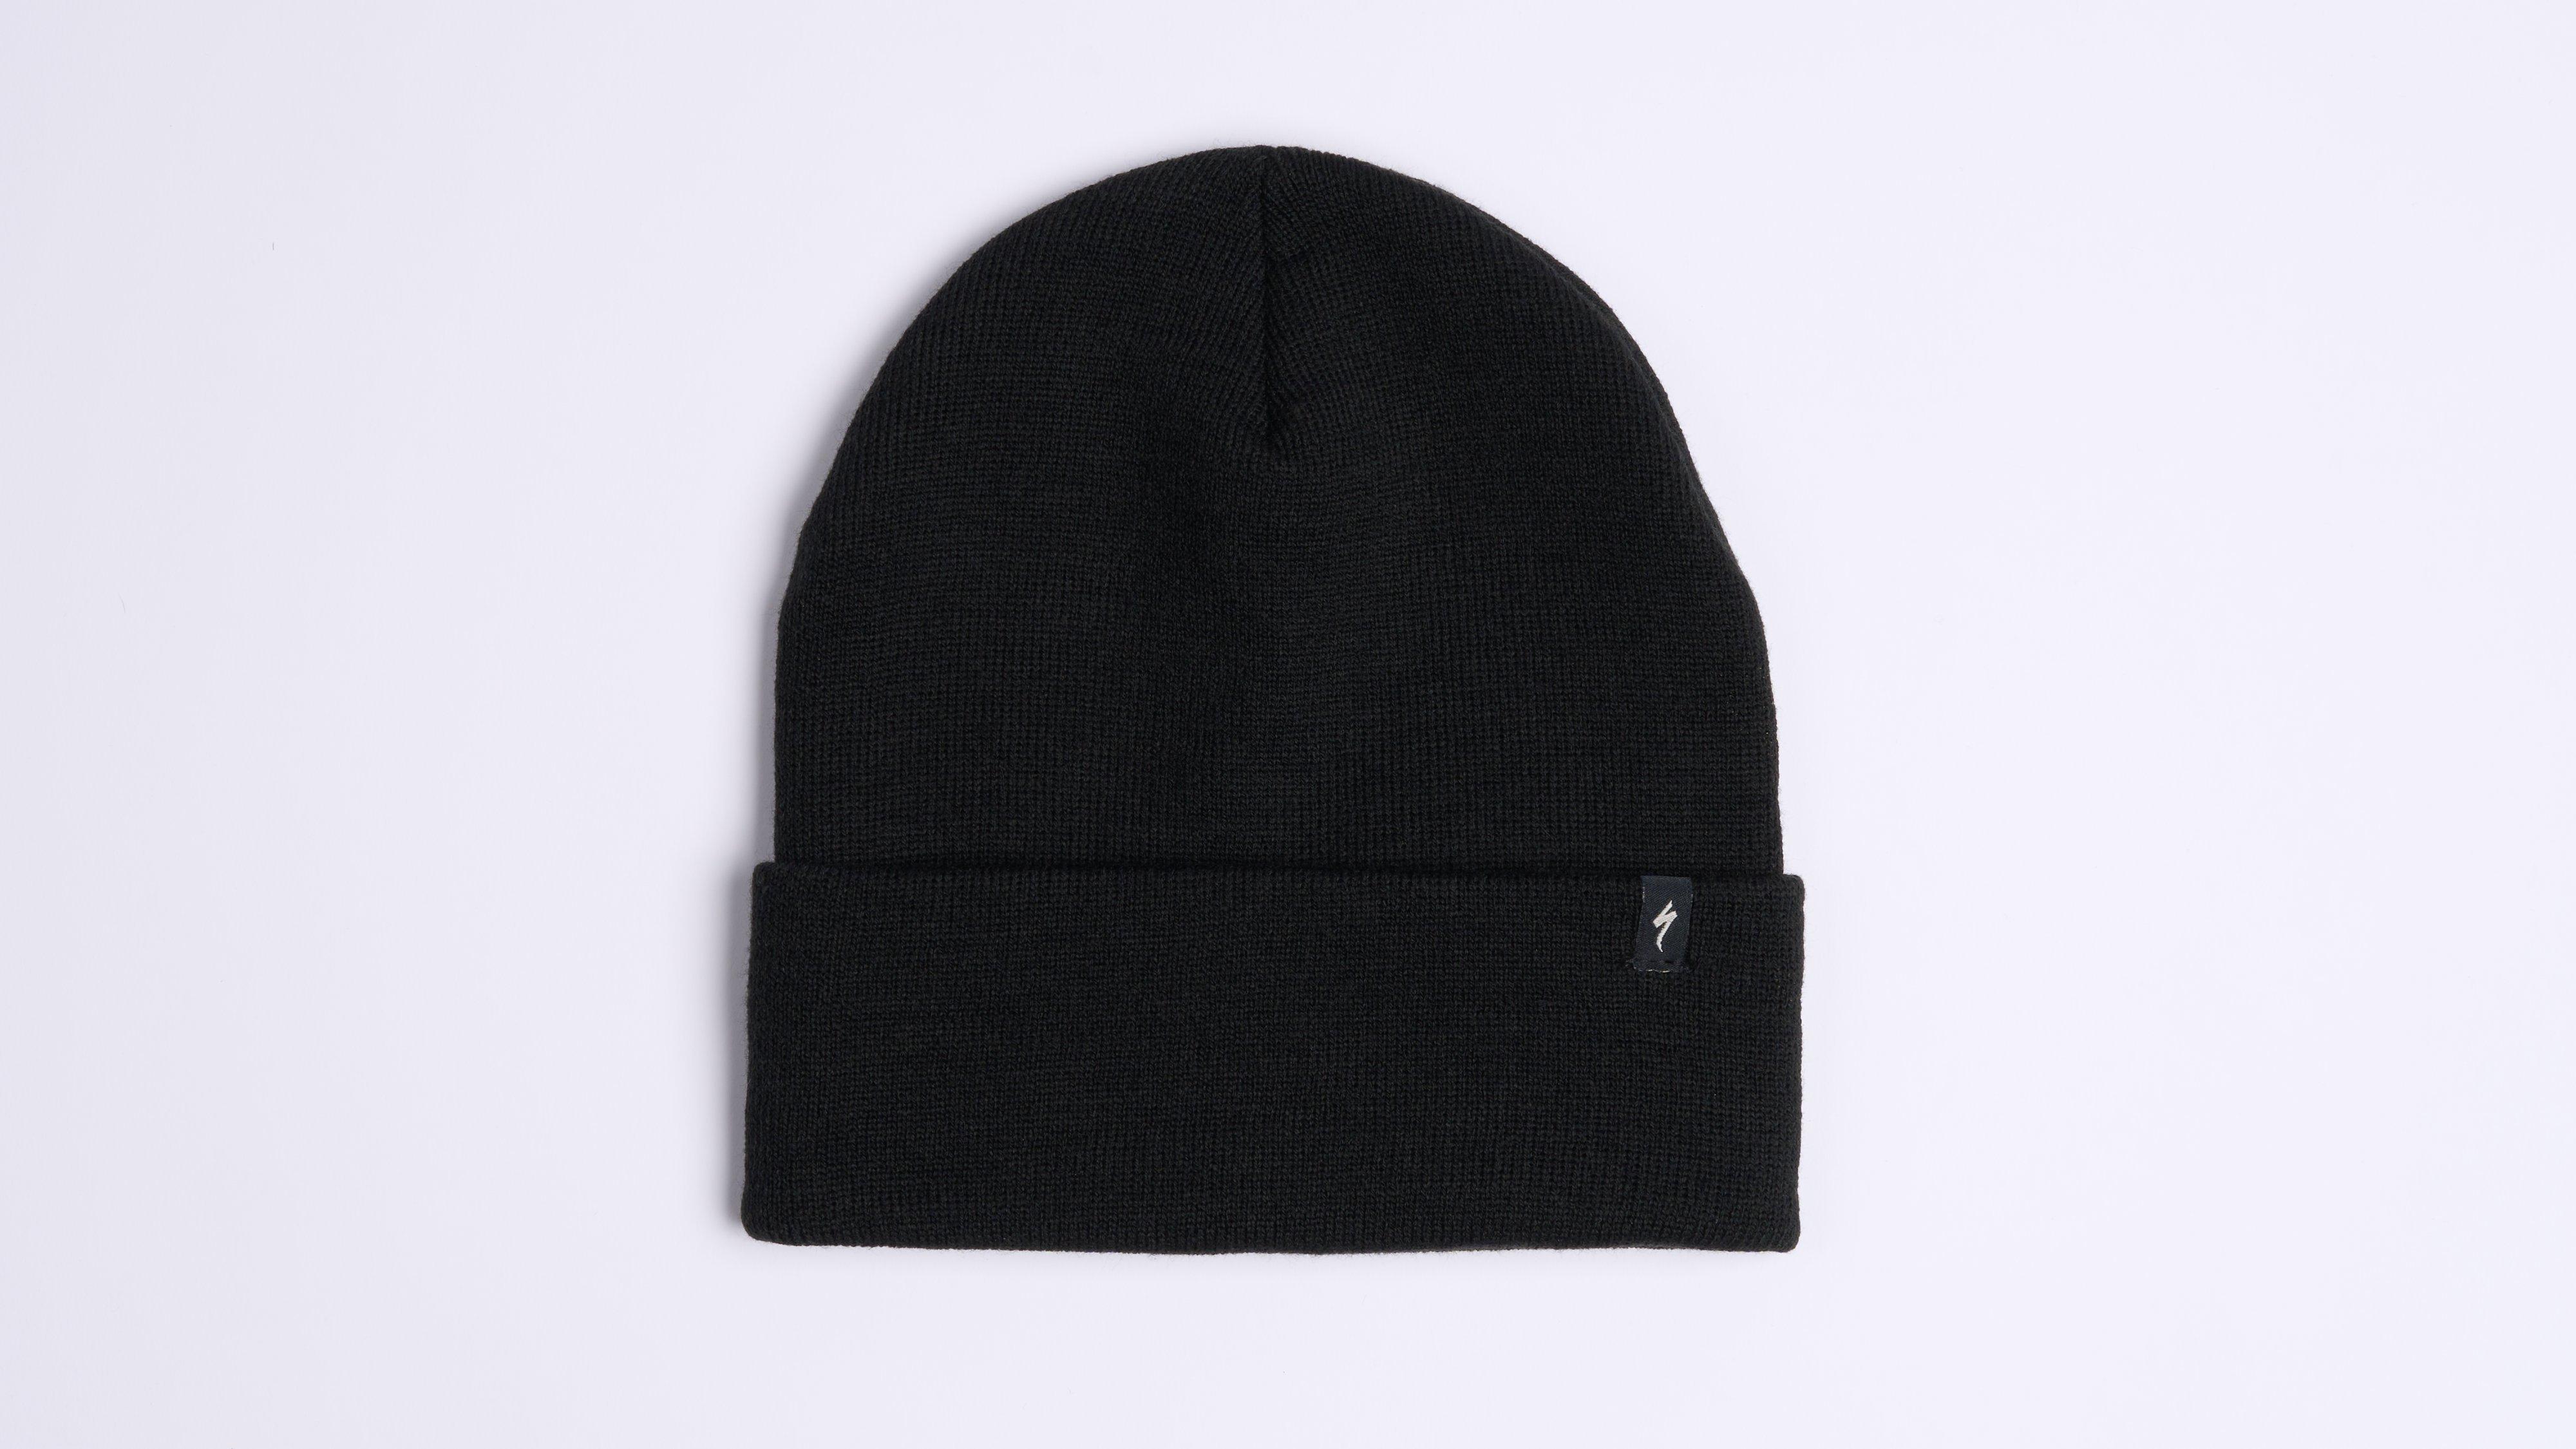 logo rib-knit beanie hat